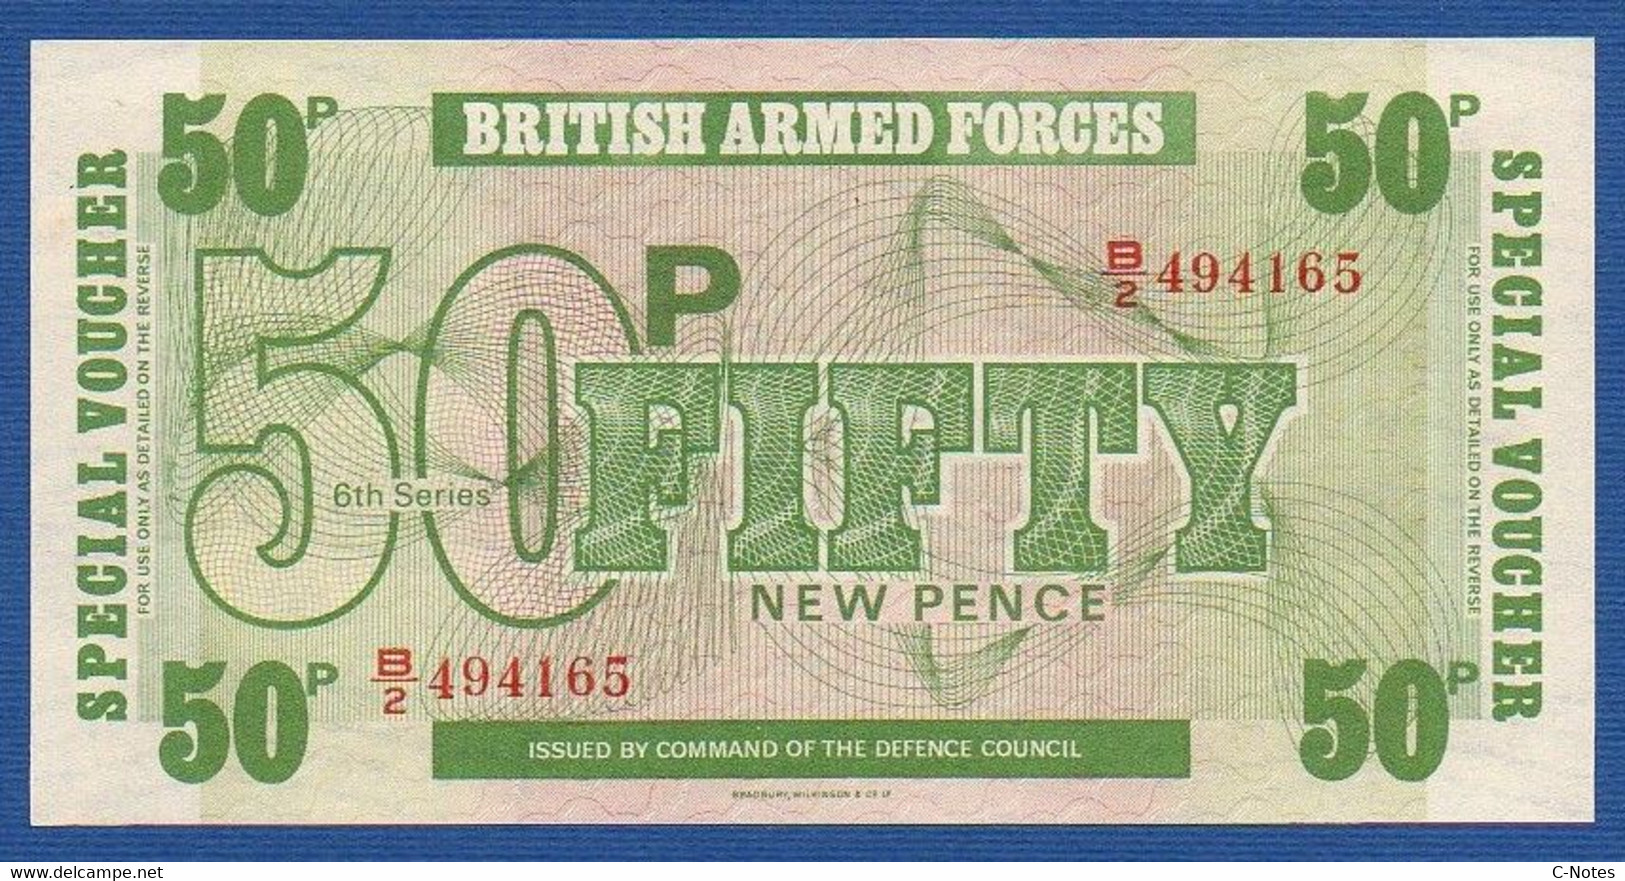 GREAT BRITAIN - P.M49 – 50 New Pence ND (1972) UNC-, Serie B/2 494165, Printer Bradbury Wilkinson, New Malden - Fuerzas Armadas Británicas & Recibos Especiales